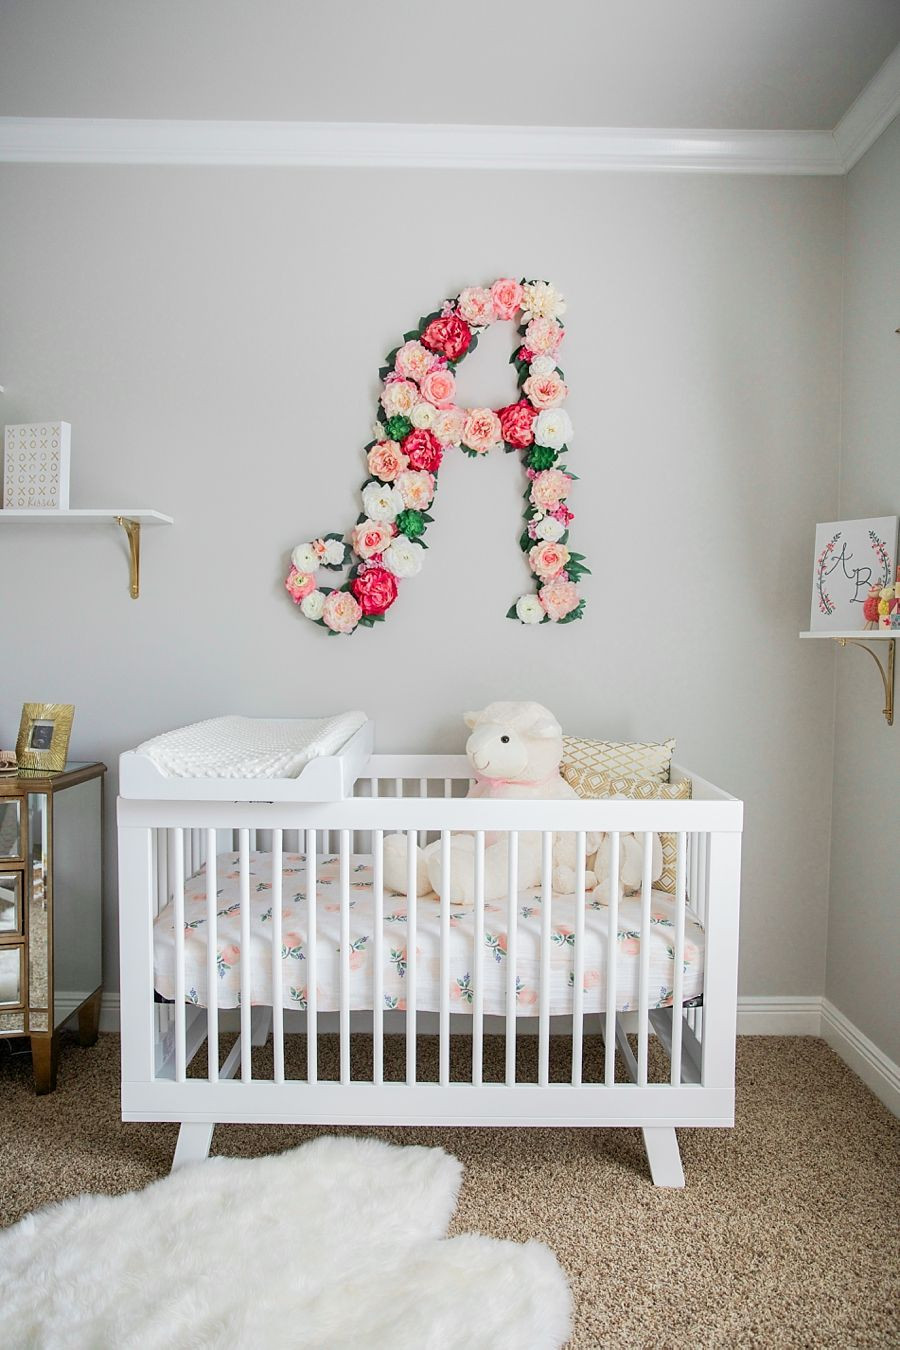 Baby Girl Nursery Wall Decor Ideas
 Baby girl nursery with floral wall